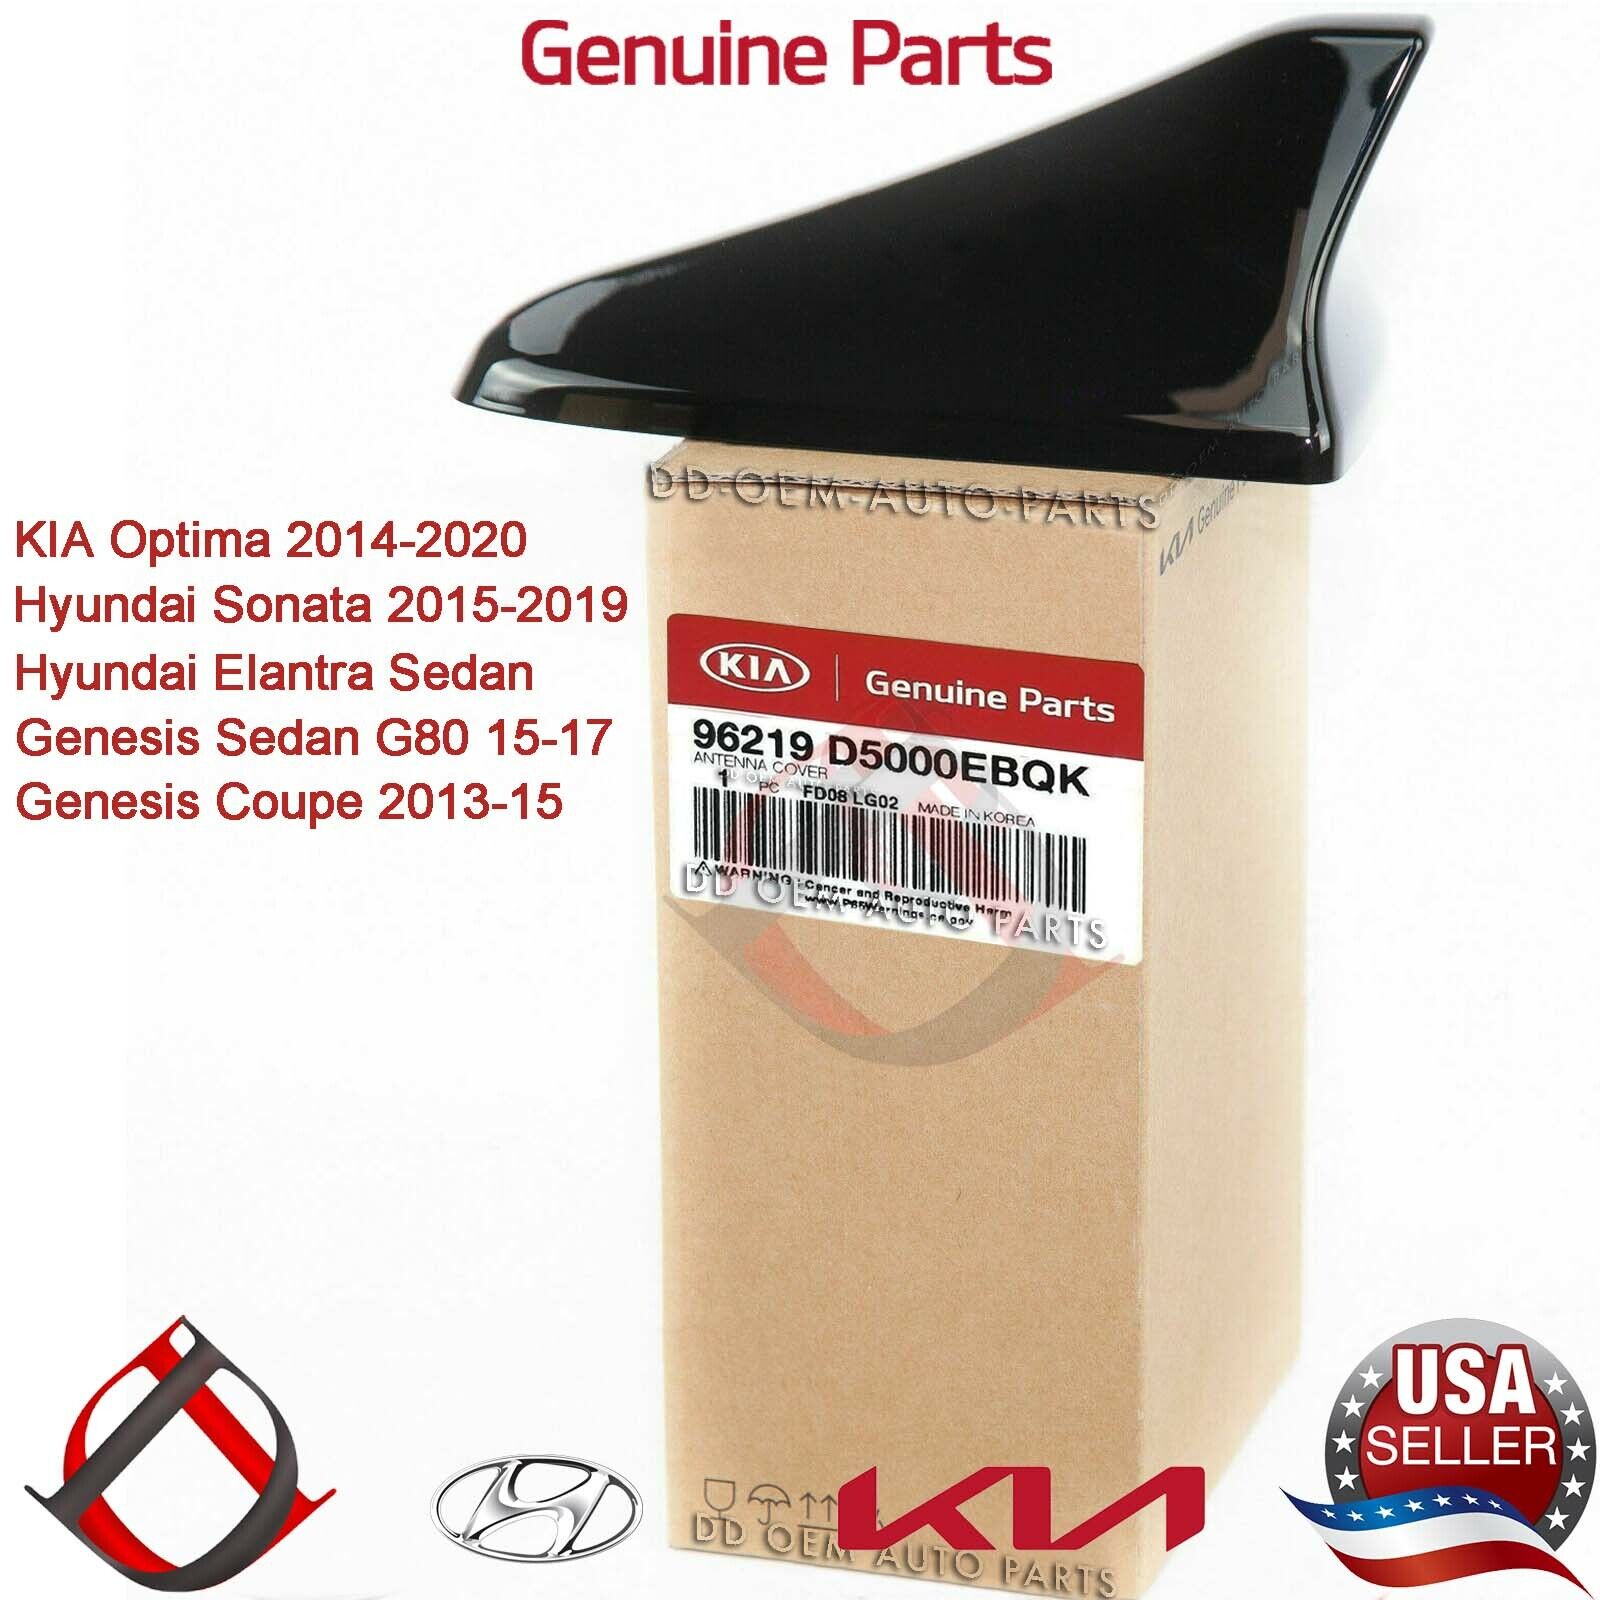 Genuine Kia Shark Fin Antenna Cover Optima Sonata 2015-2020 Ebony Black Color EB